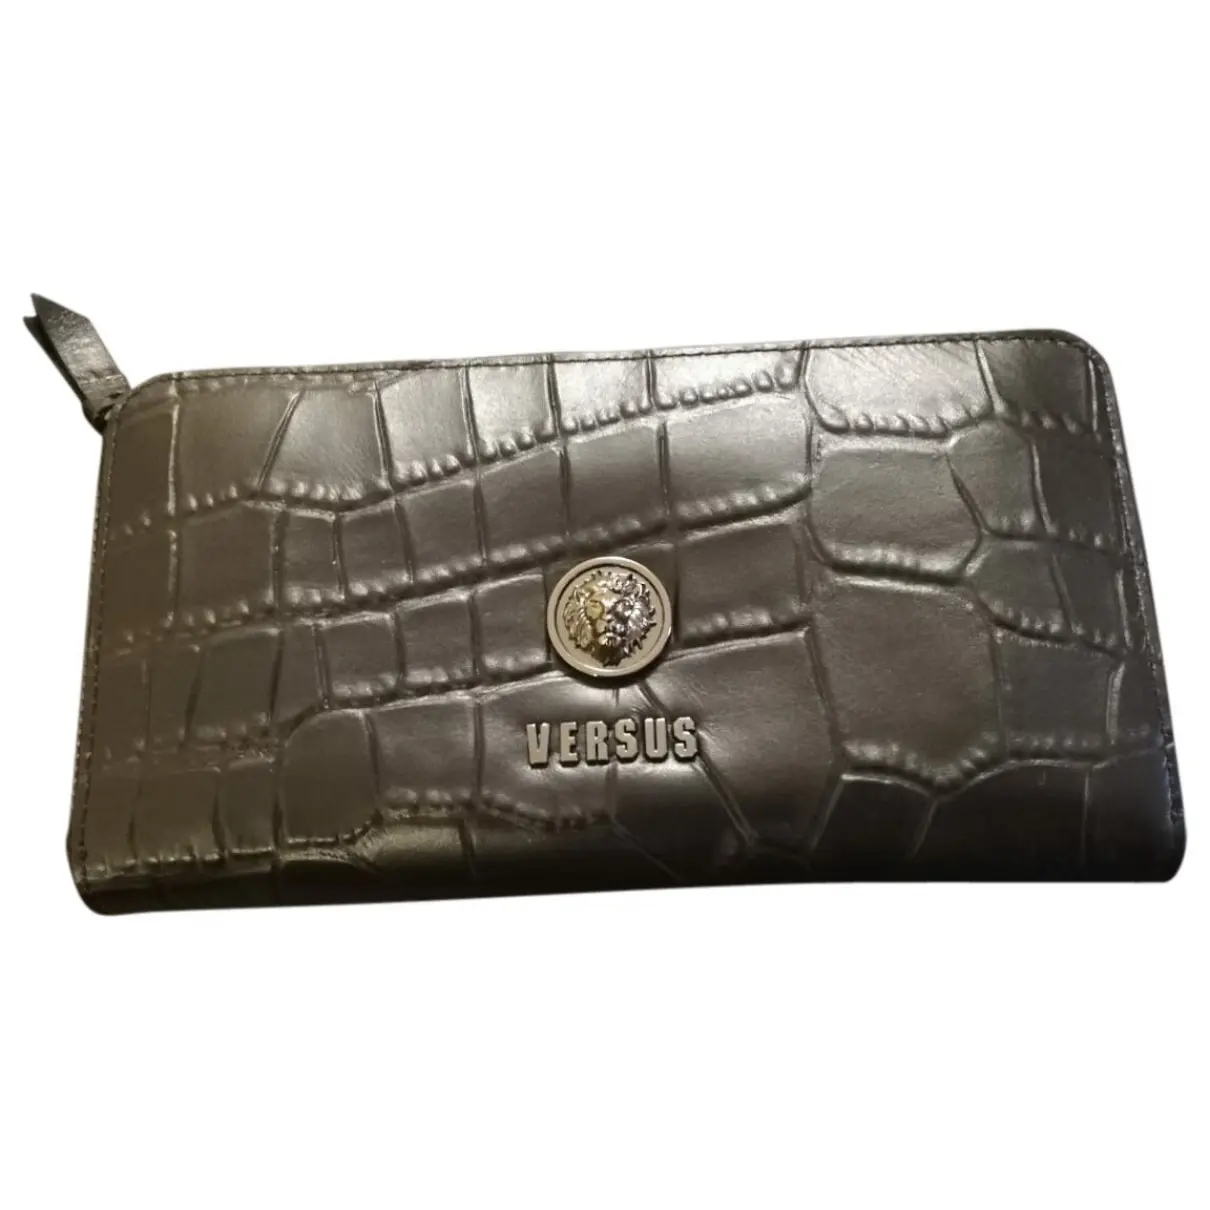 Leather wallet Versus - Vintage